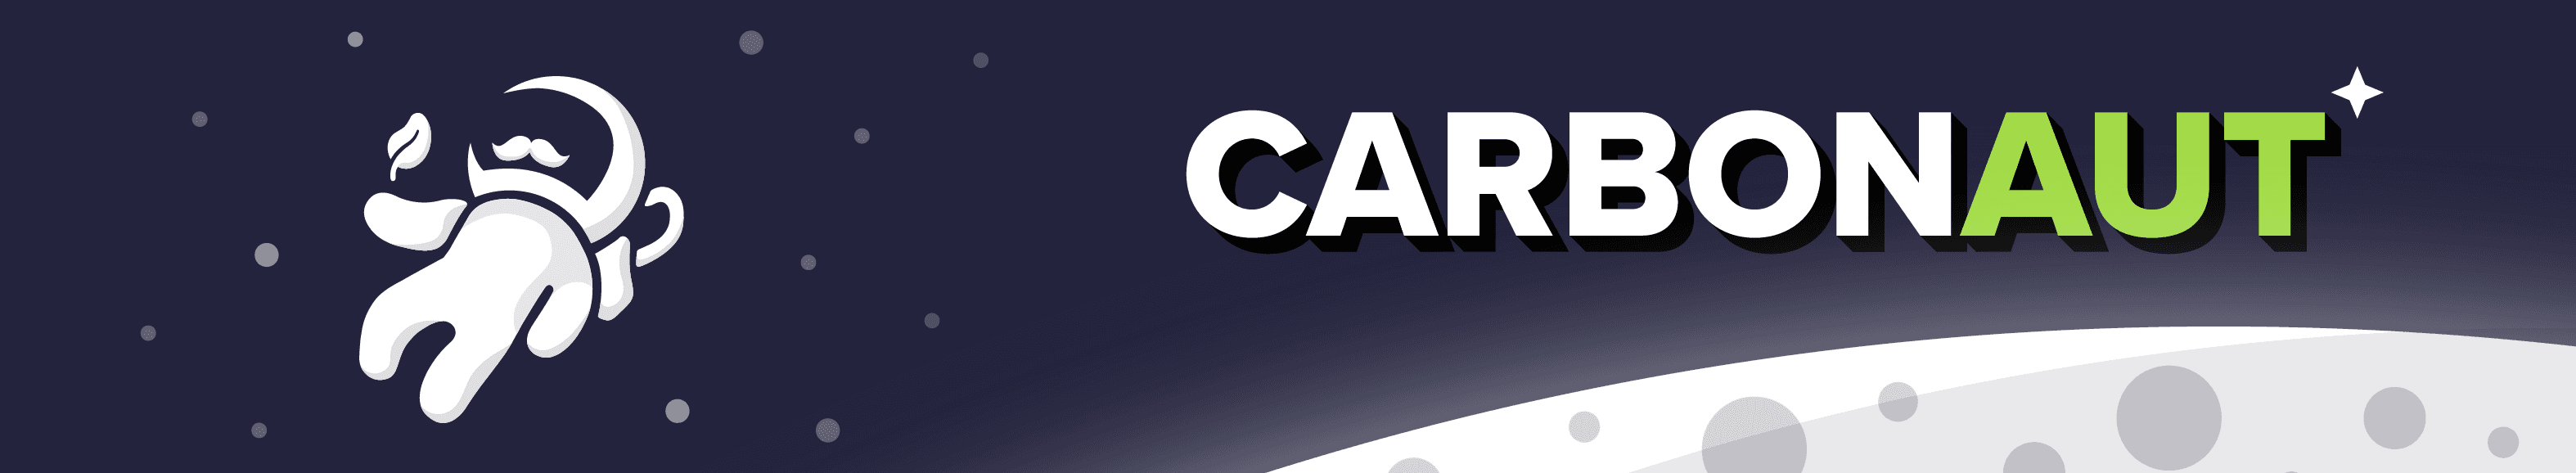 Carbonaut card